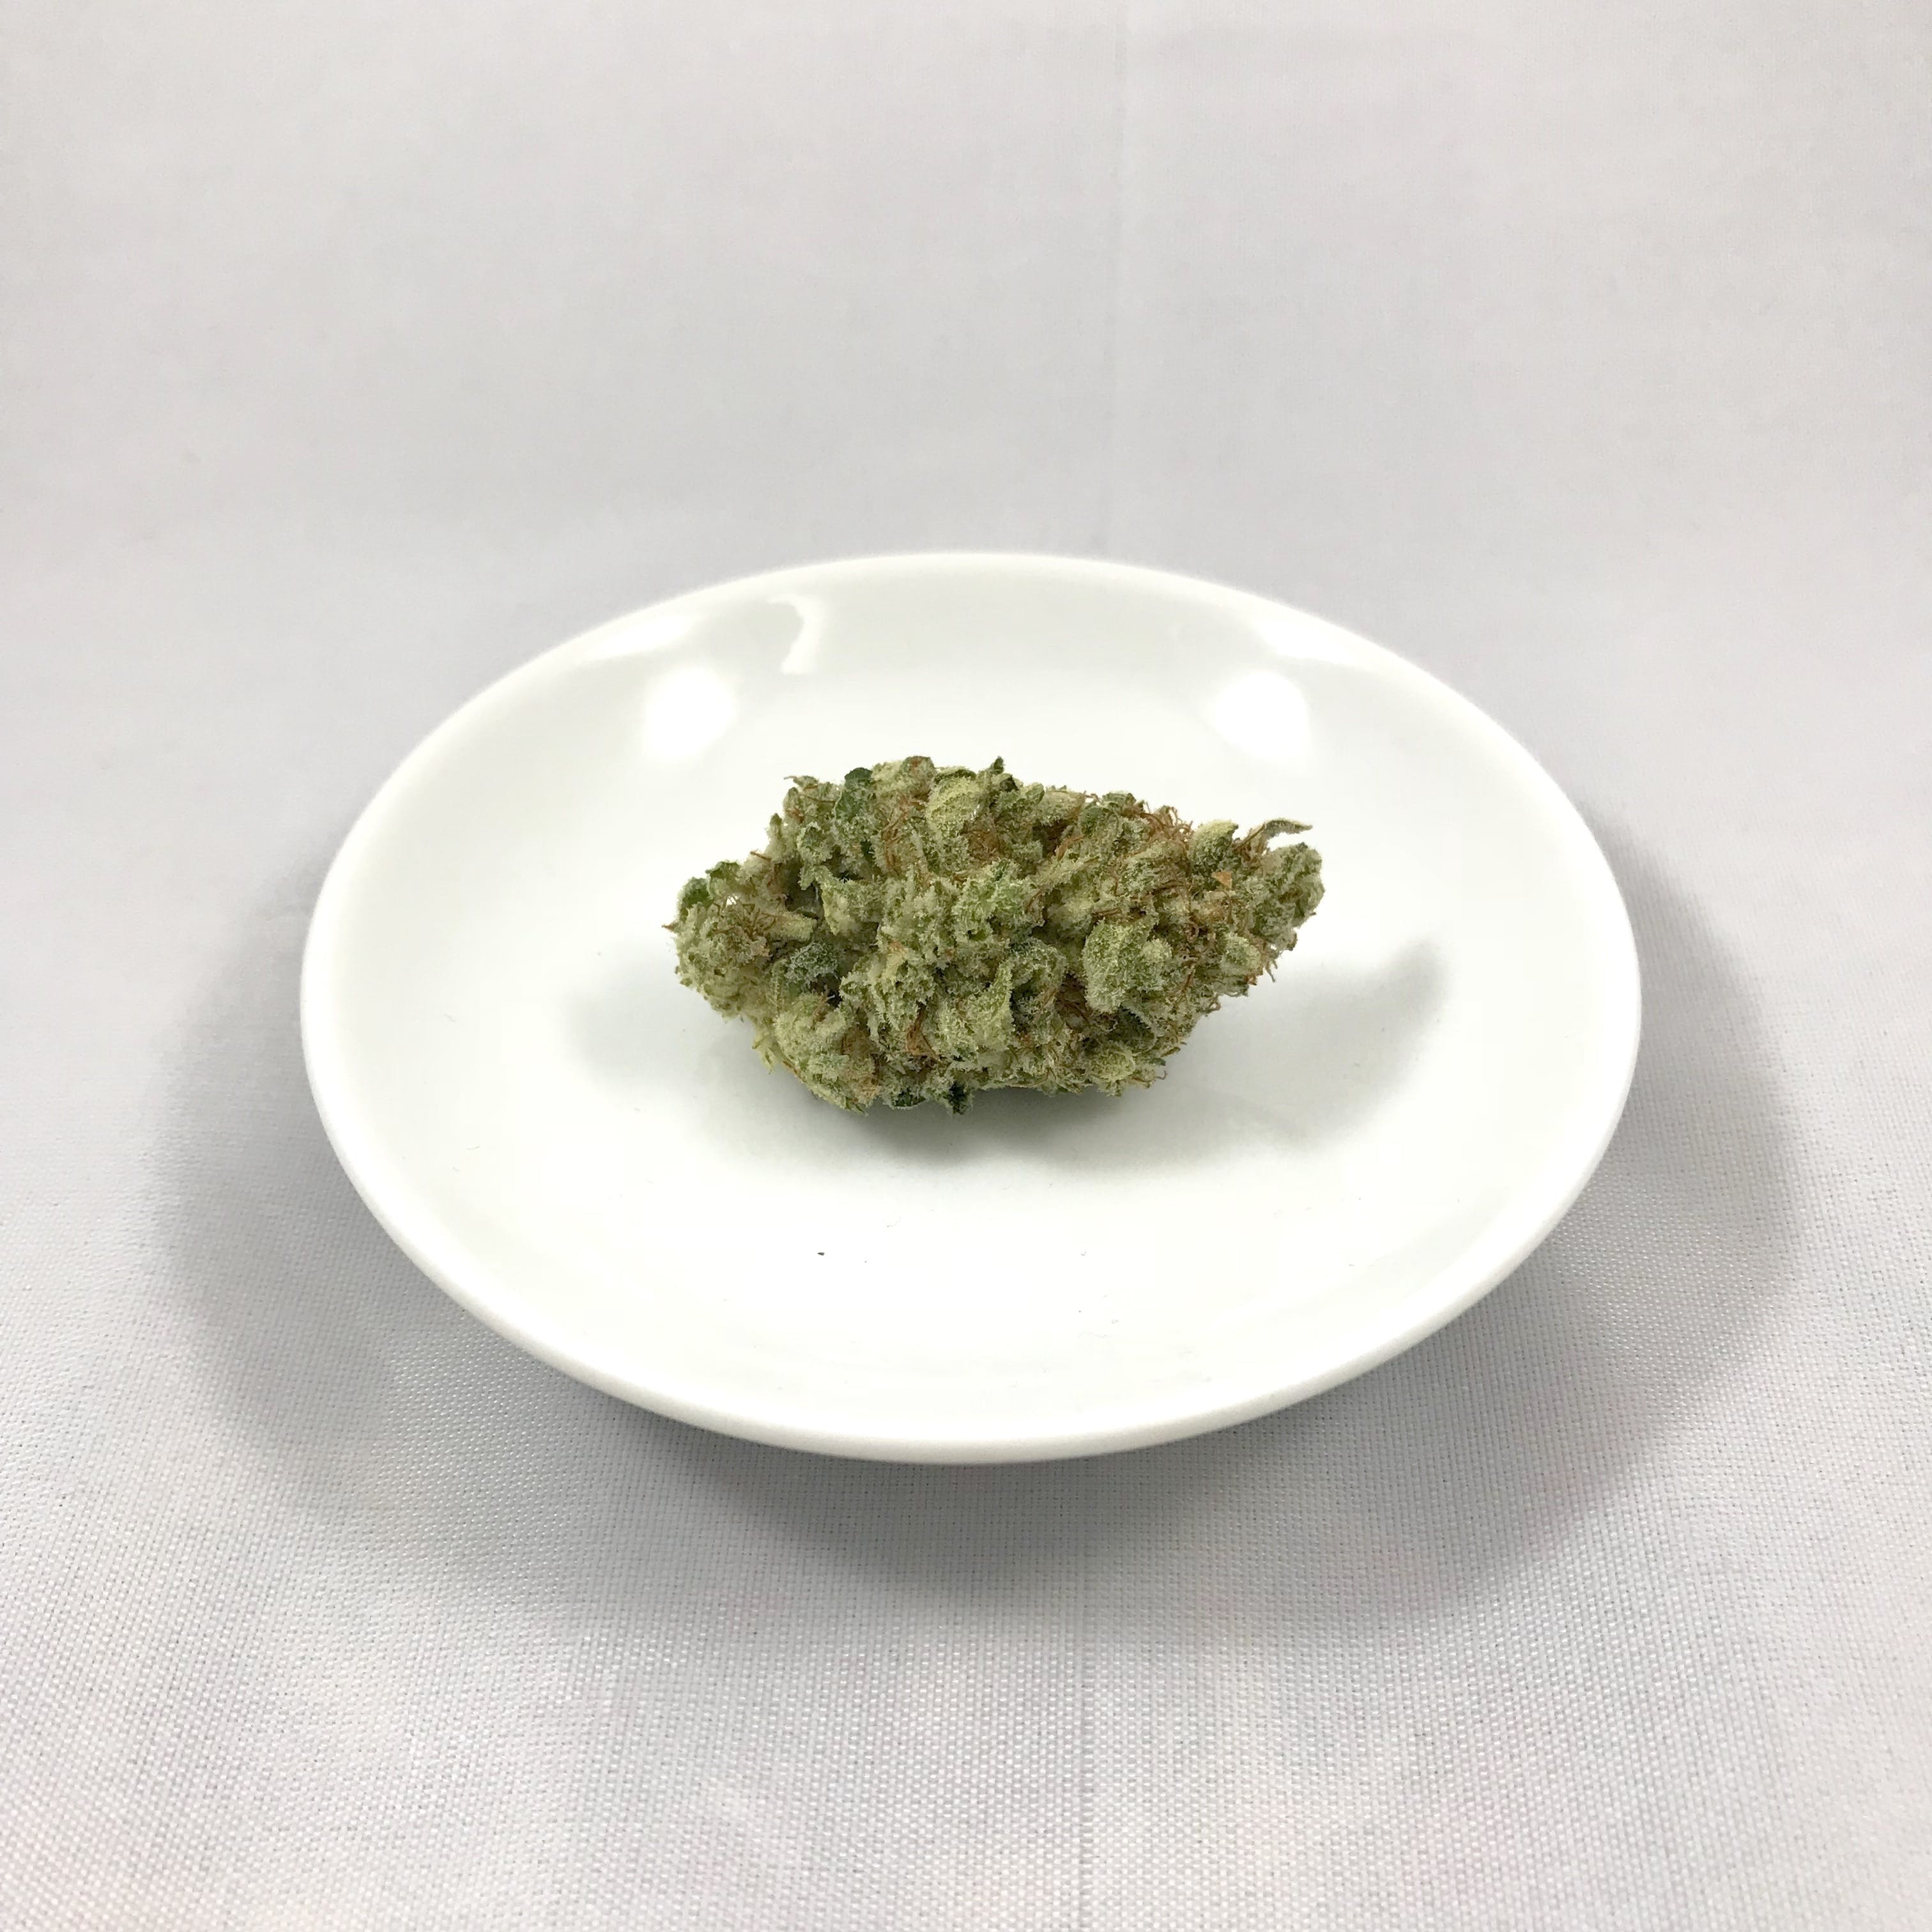 marijuana-dispensaries-highway-99-collective-in-bakersfield-super-glue